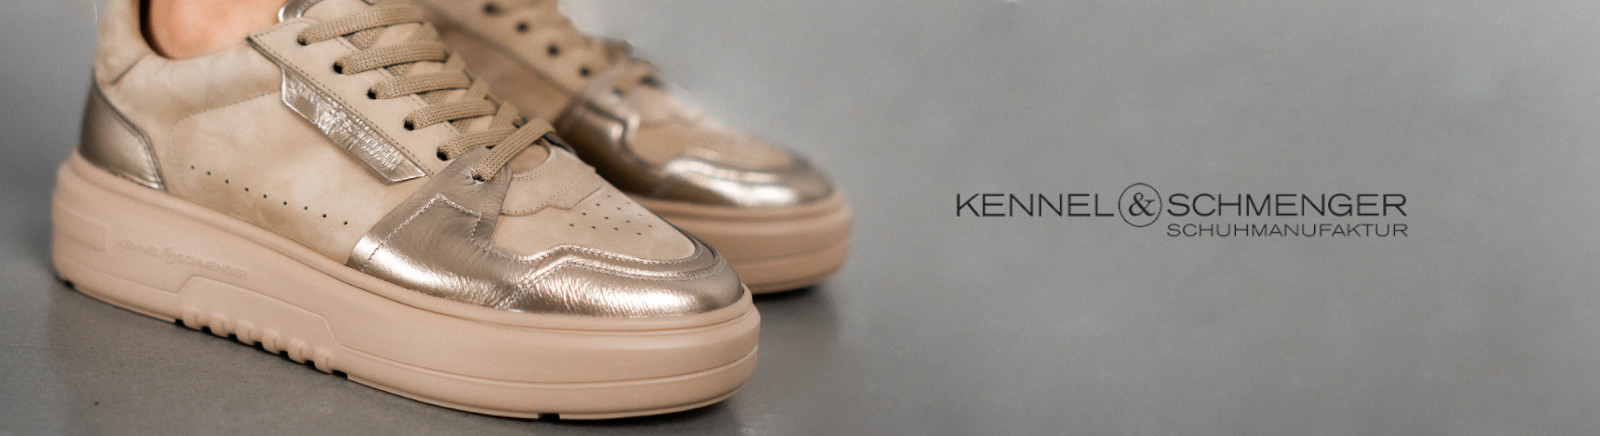 Kennel & Schmenger Chelsea Boots für Damen im Online-Shop von GISY kaufen